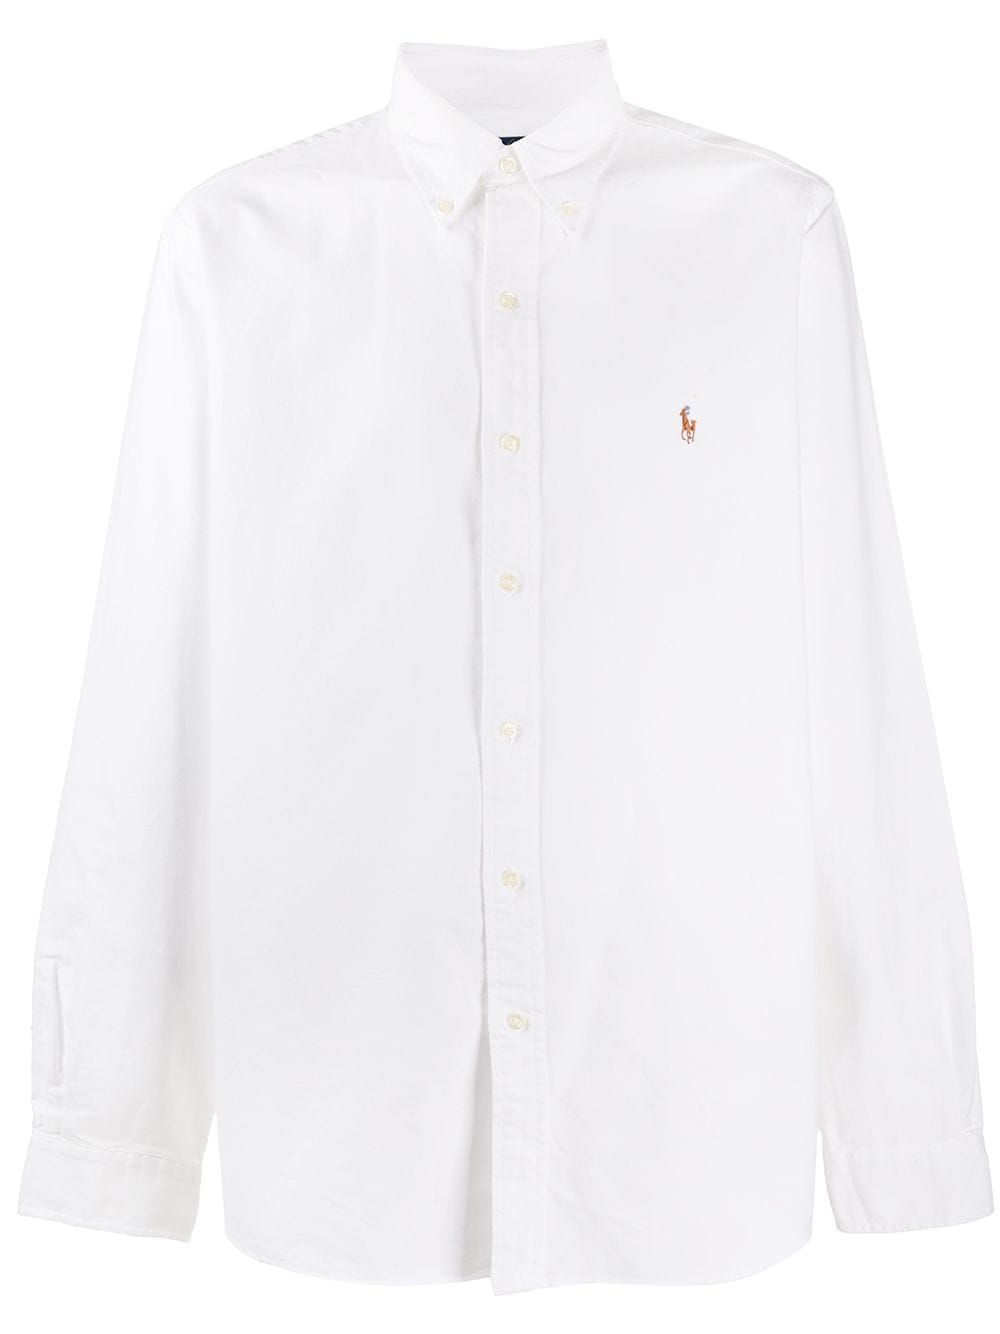 Polo Ralph Lauren embroidered logo cotton shirt - White von Polo Ralph Lauren